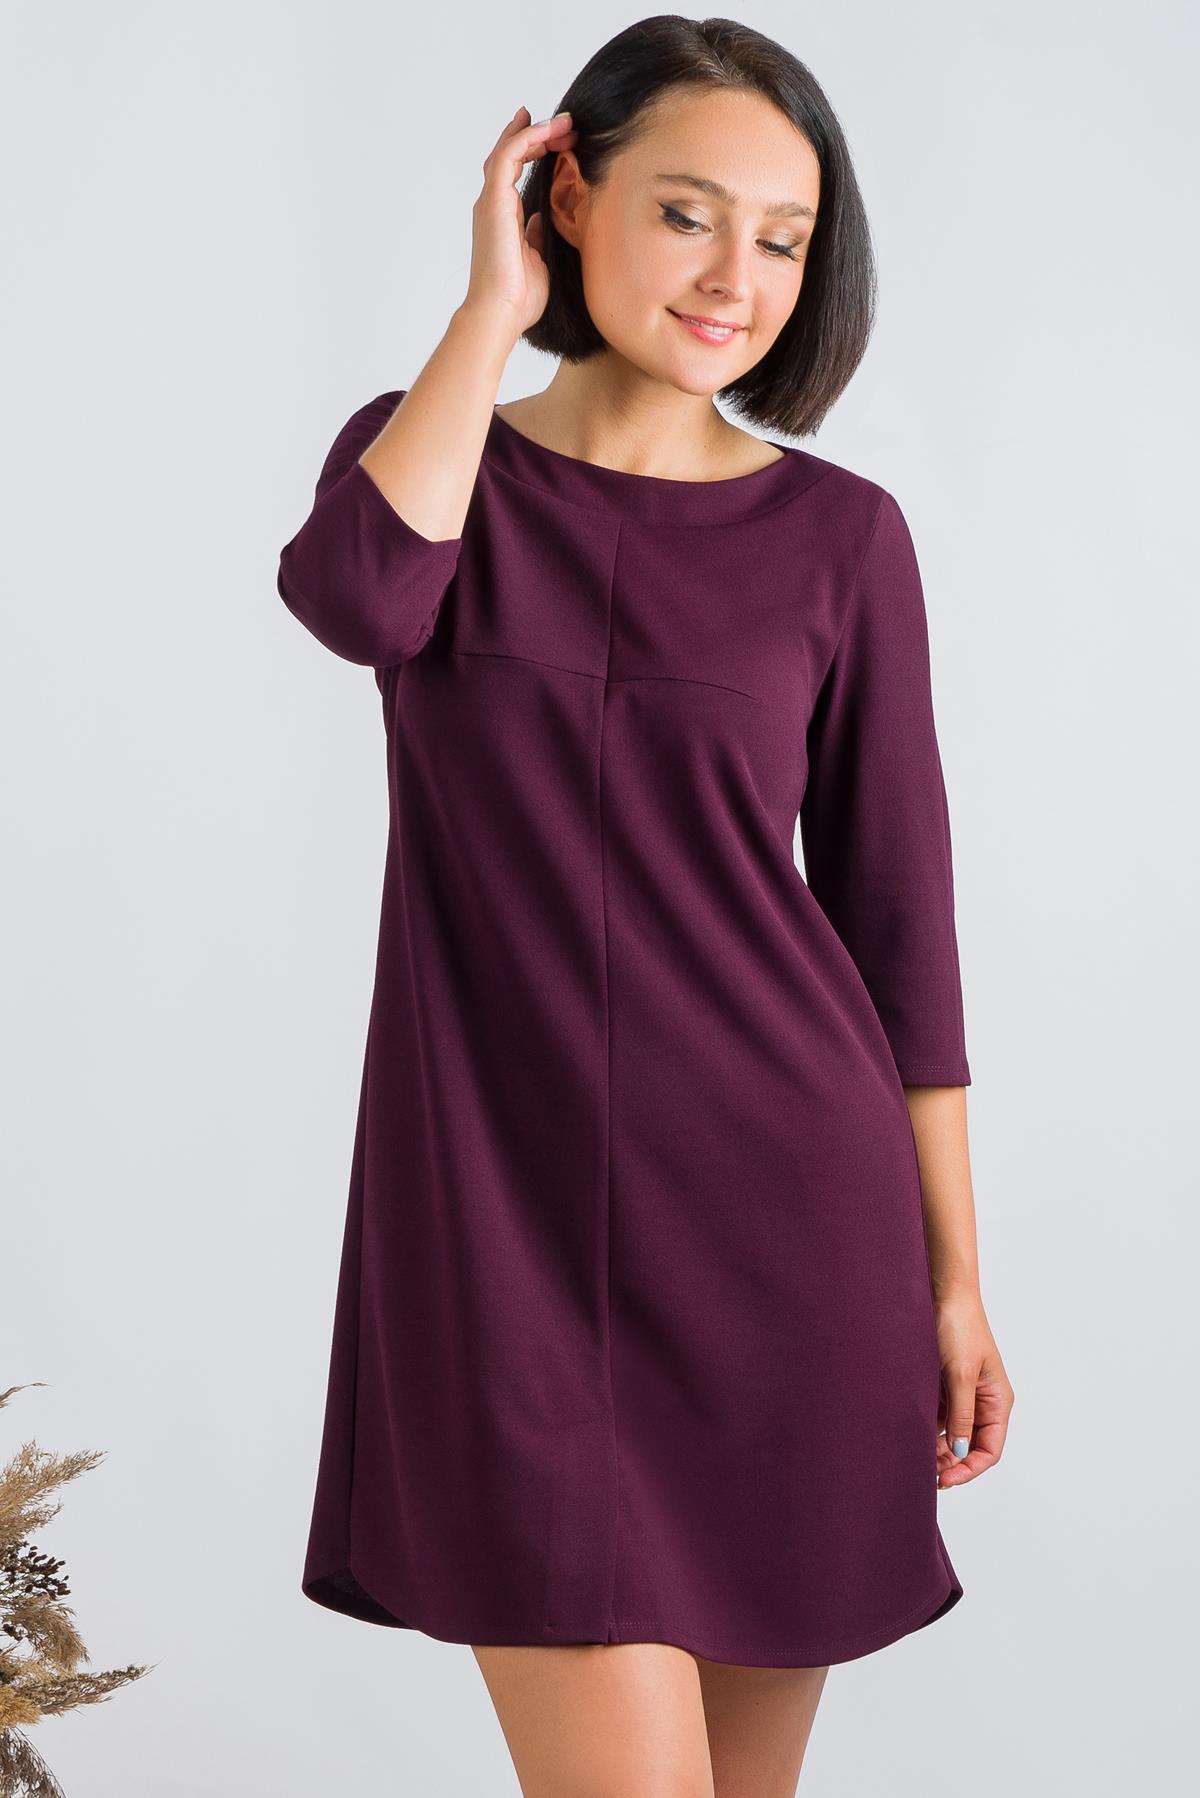 Платье женское Ш'аrliзе 0183 фиолетовое 42 RU